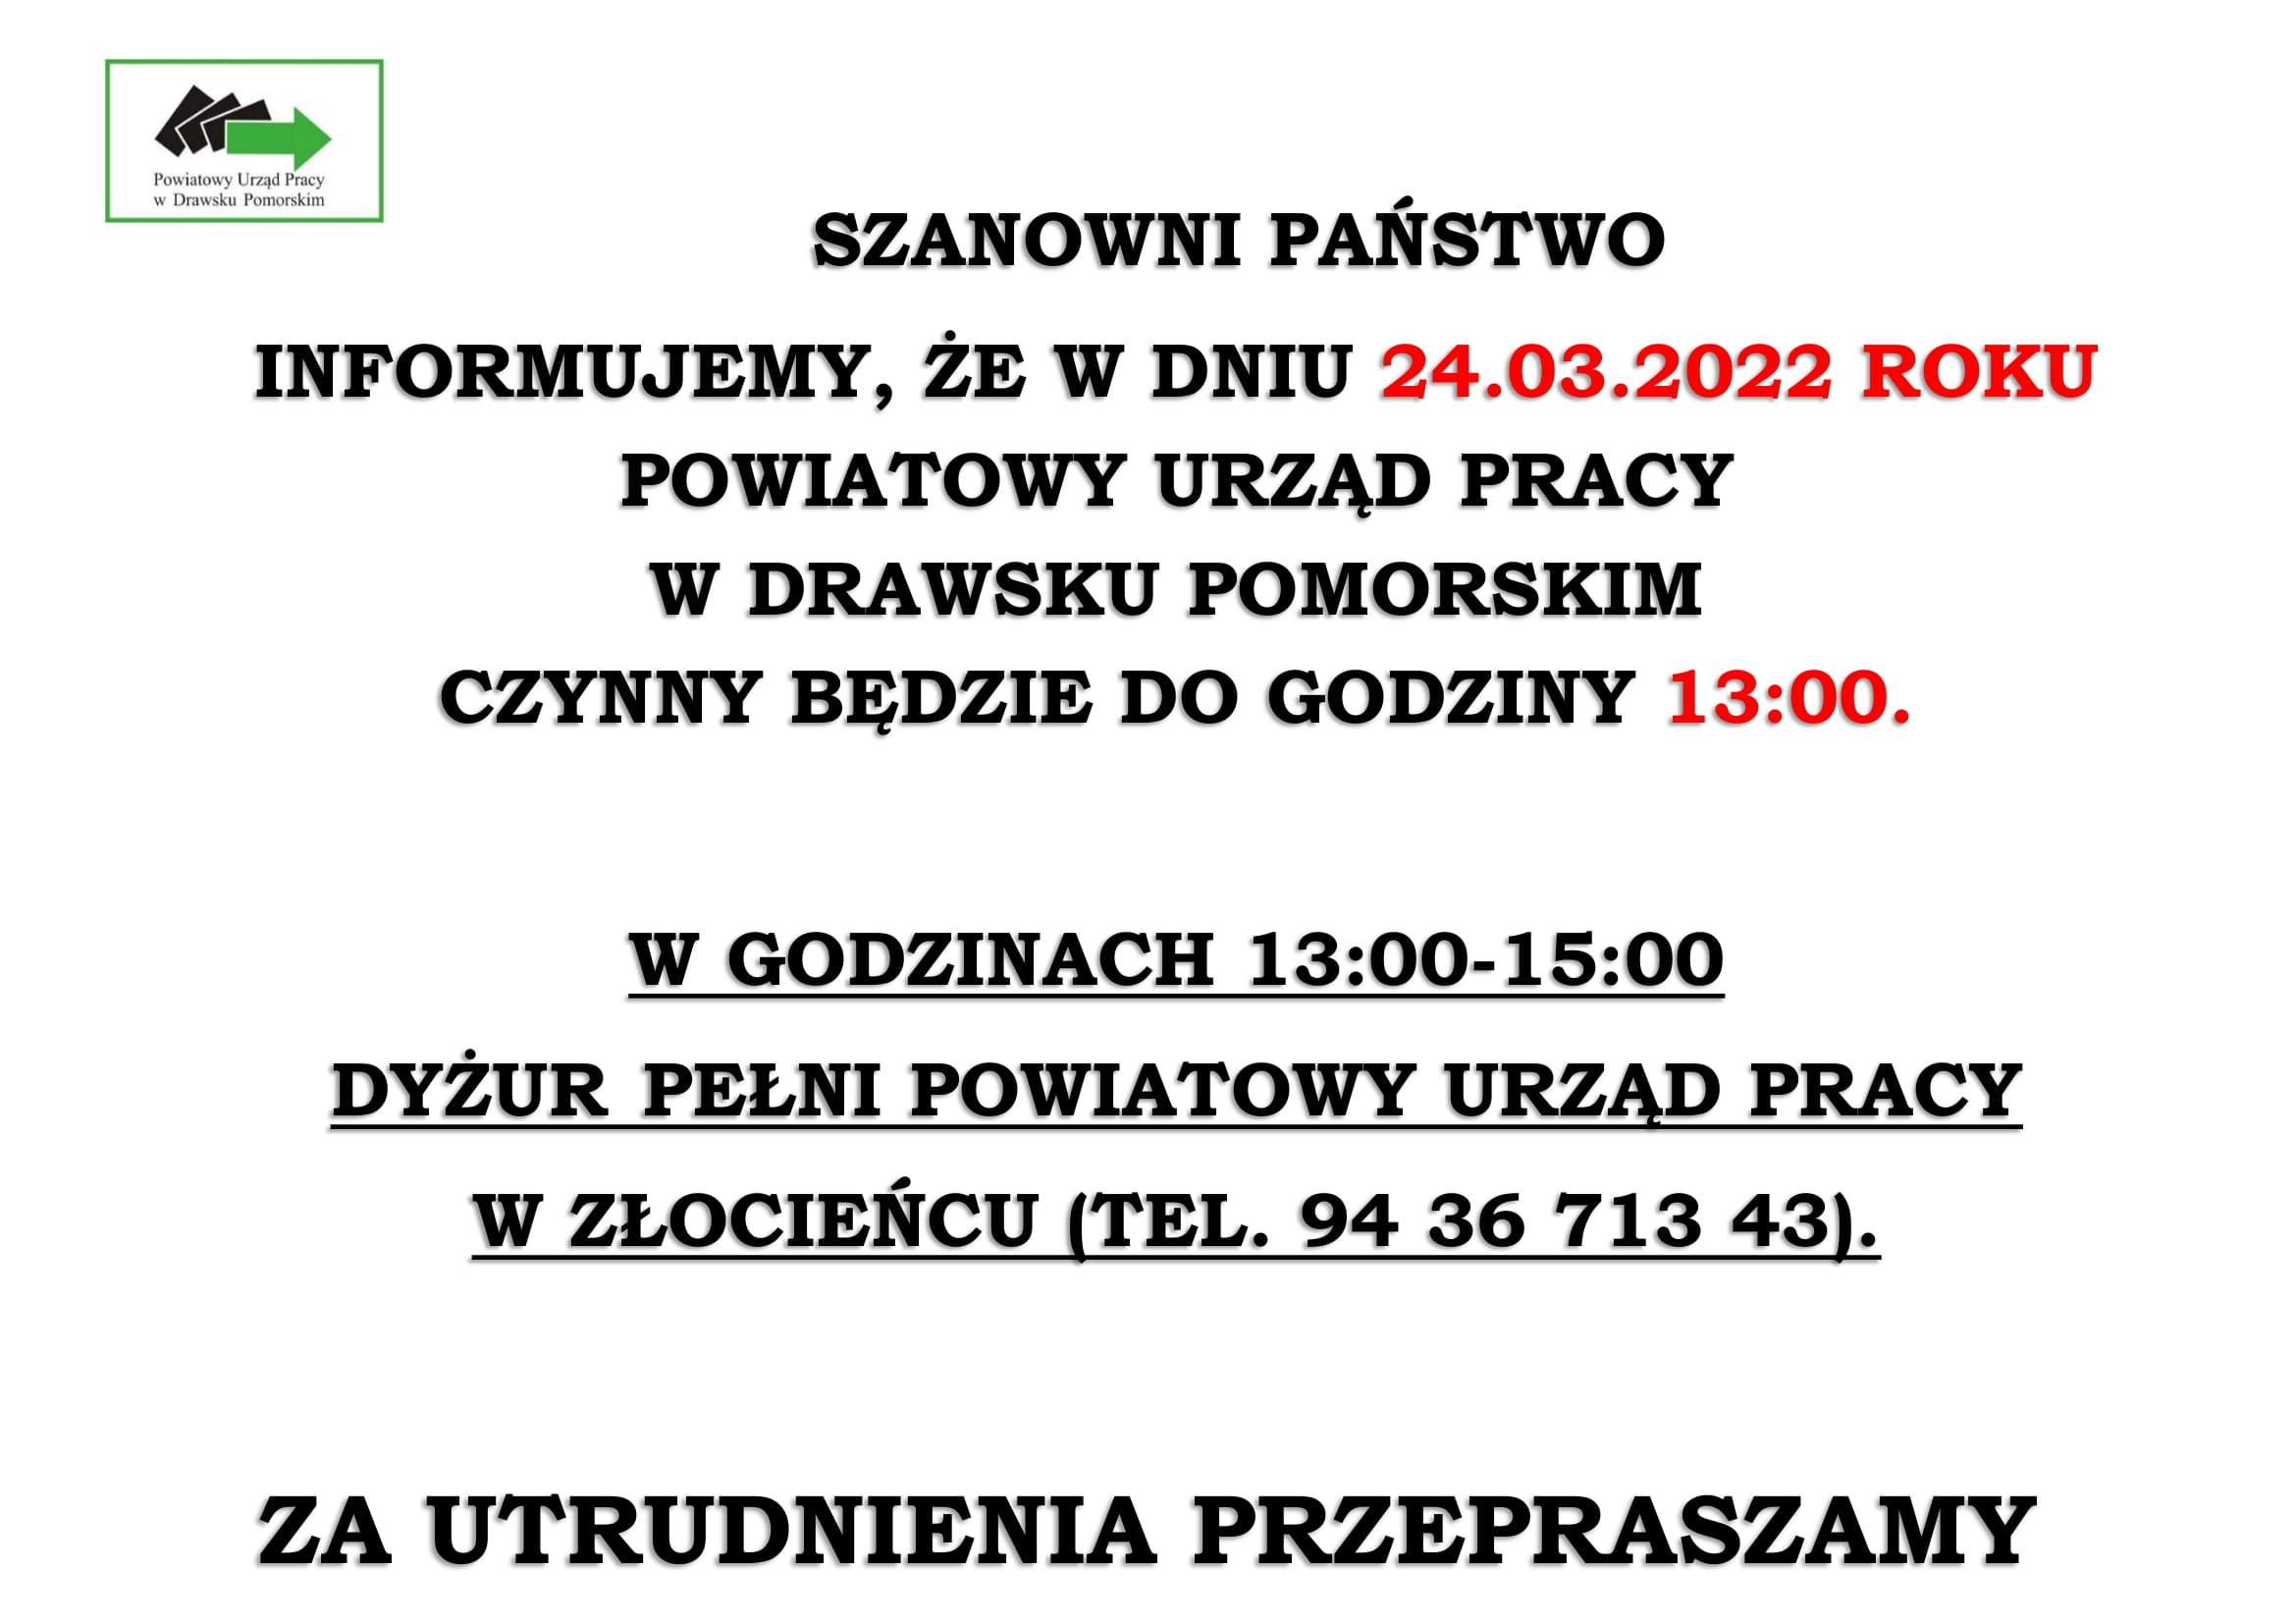 W dniu 24.03.2022 PUP w Drawsku Pomorskim czynny do godziny 13:00